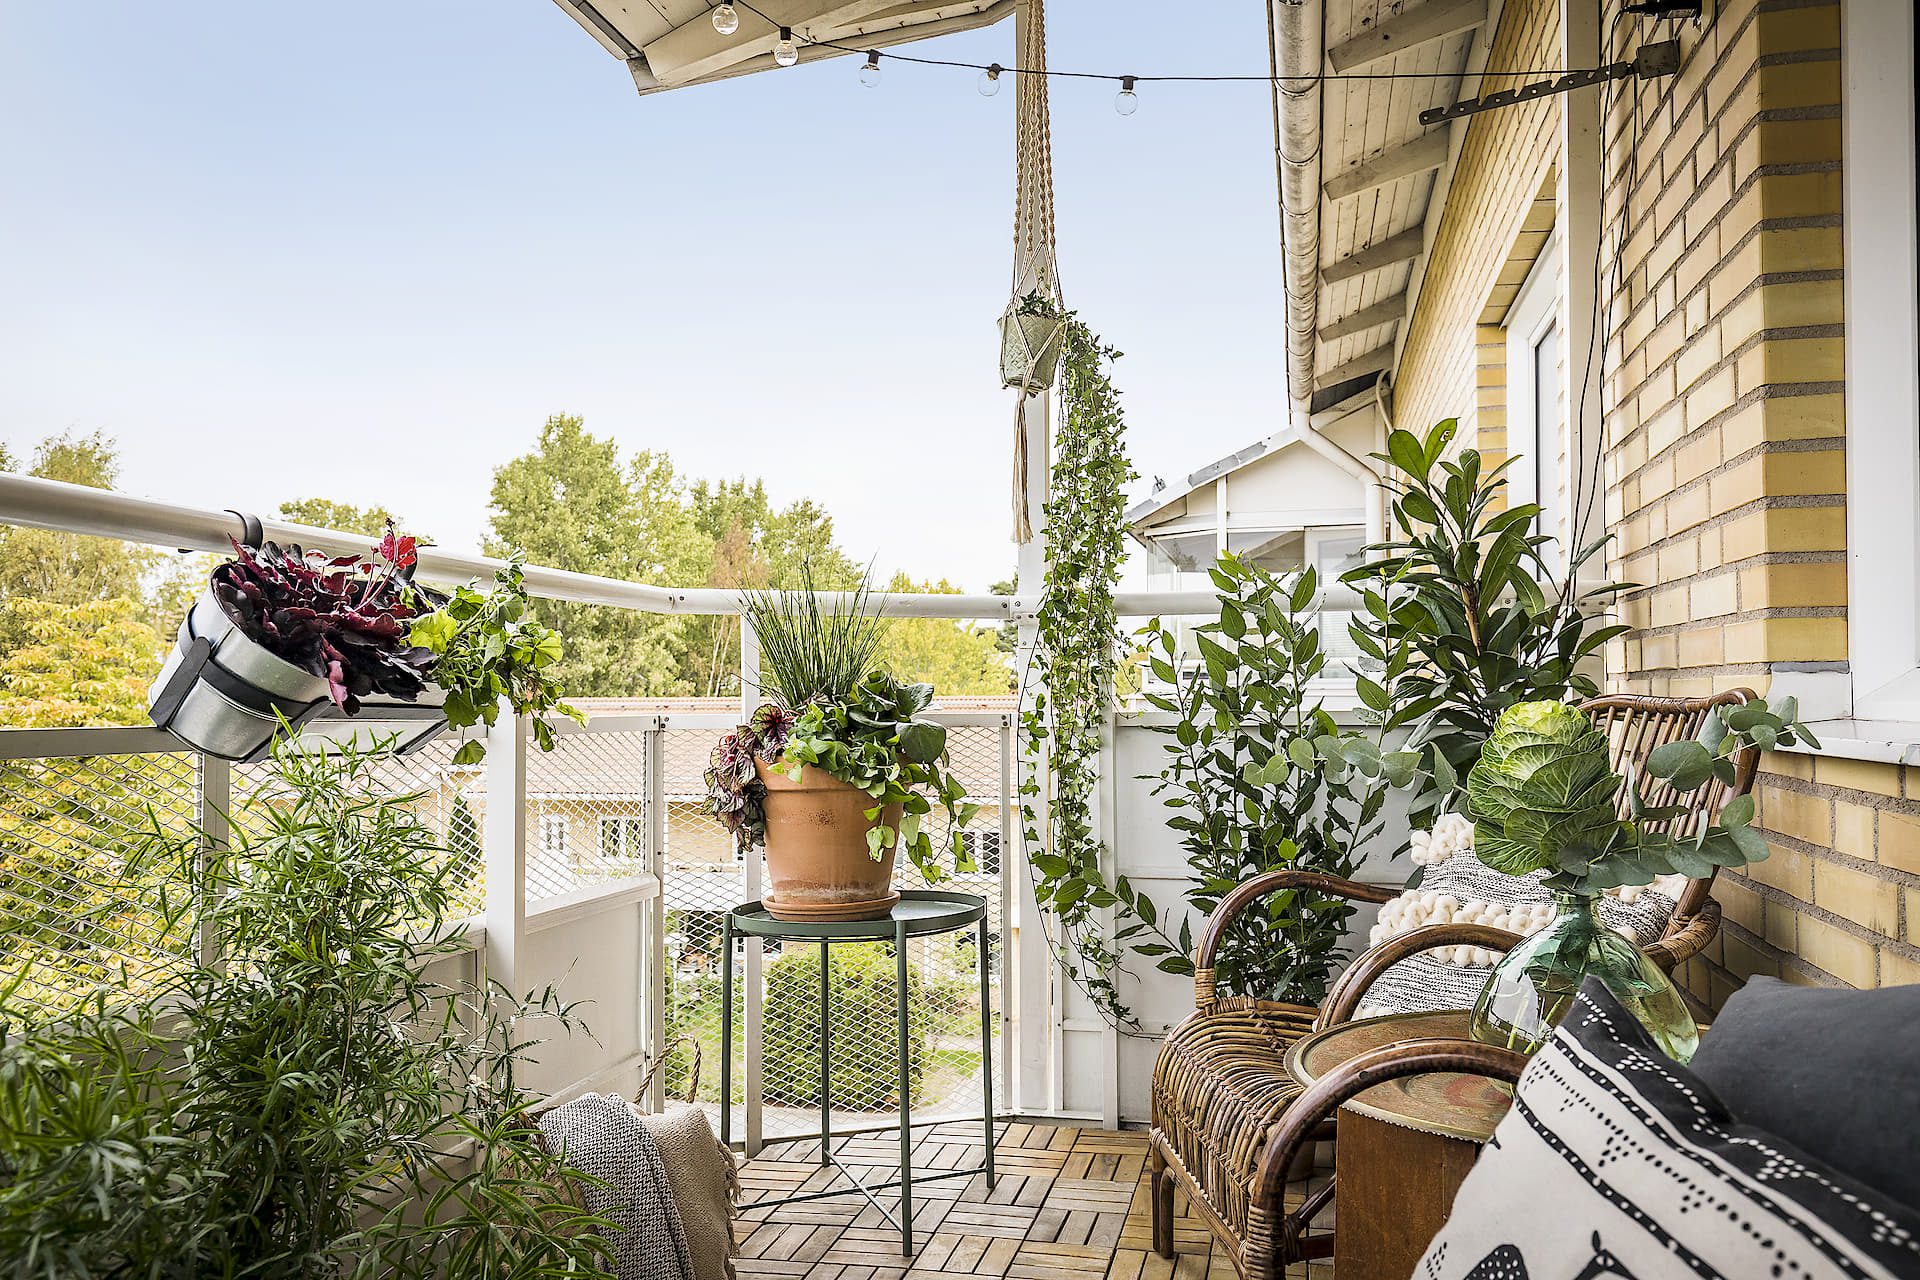 74 Creative Yet Simple Summer Balcony Décor Ideas - DigsDigs